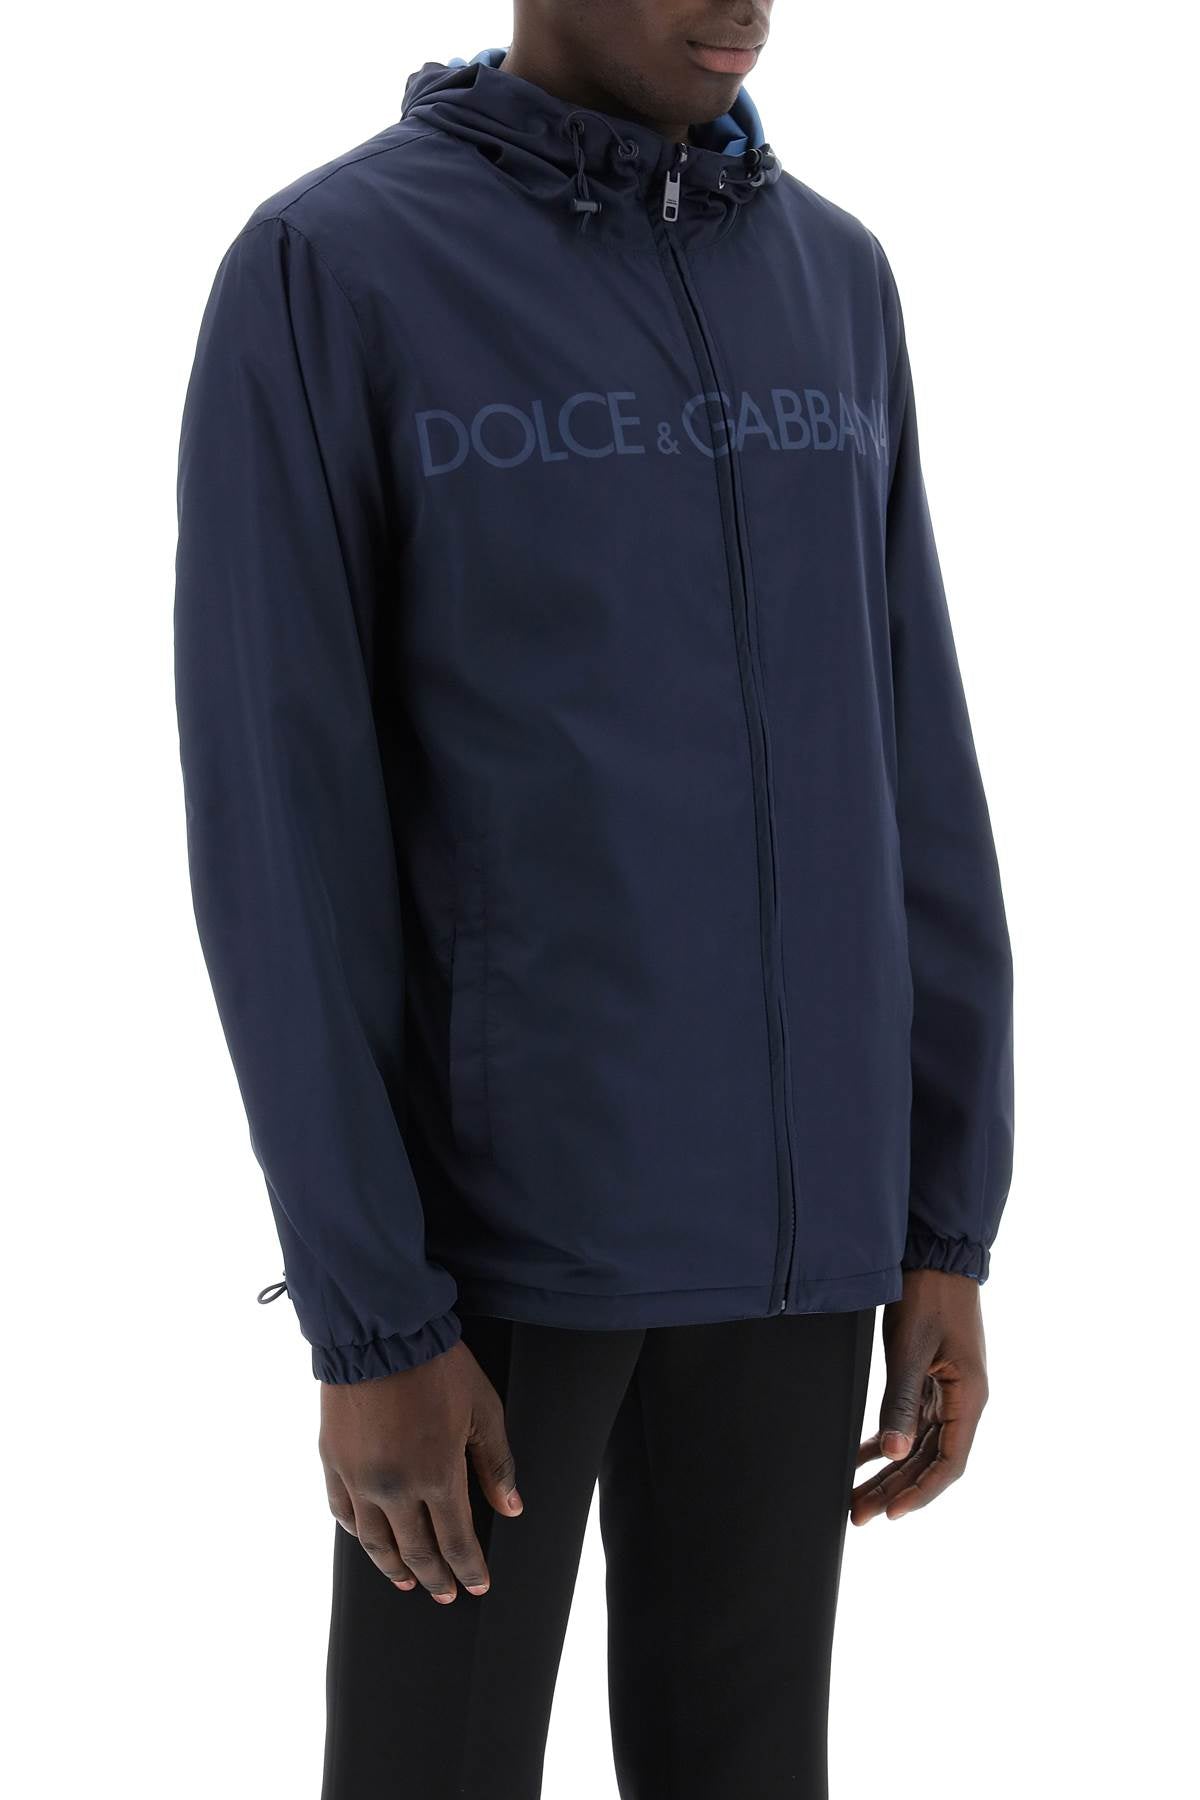 Dolce & Gabbana Reversible Windbreaker Jacket   Blue